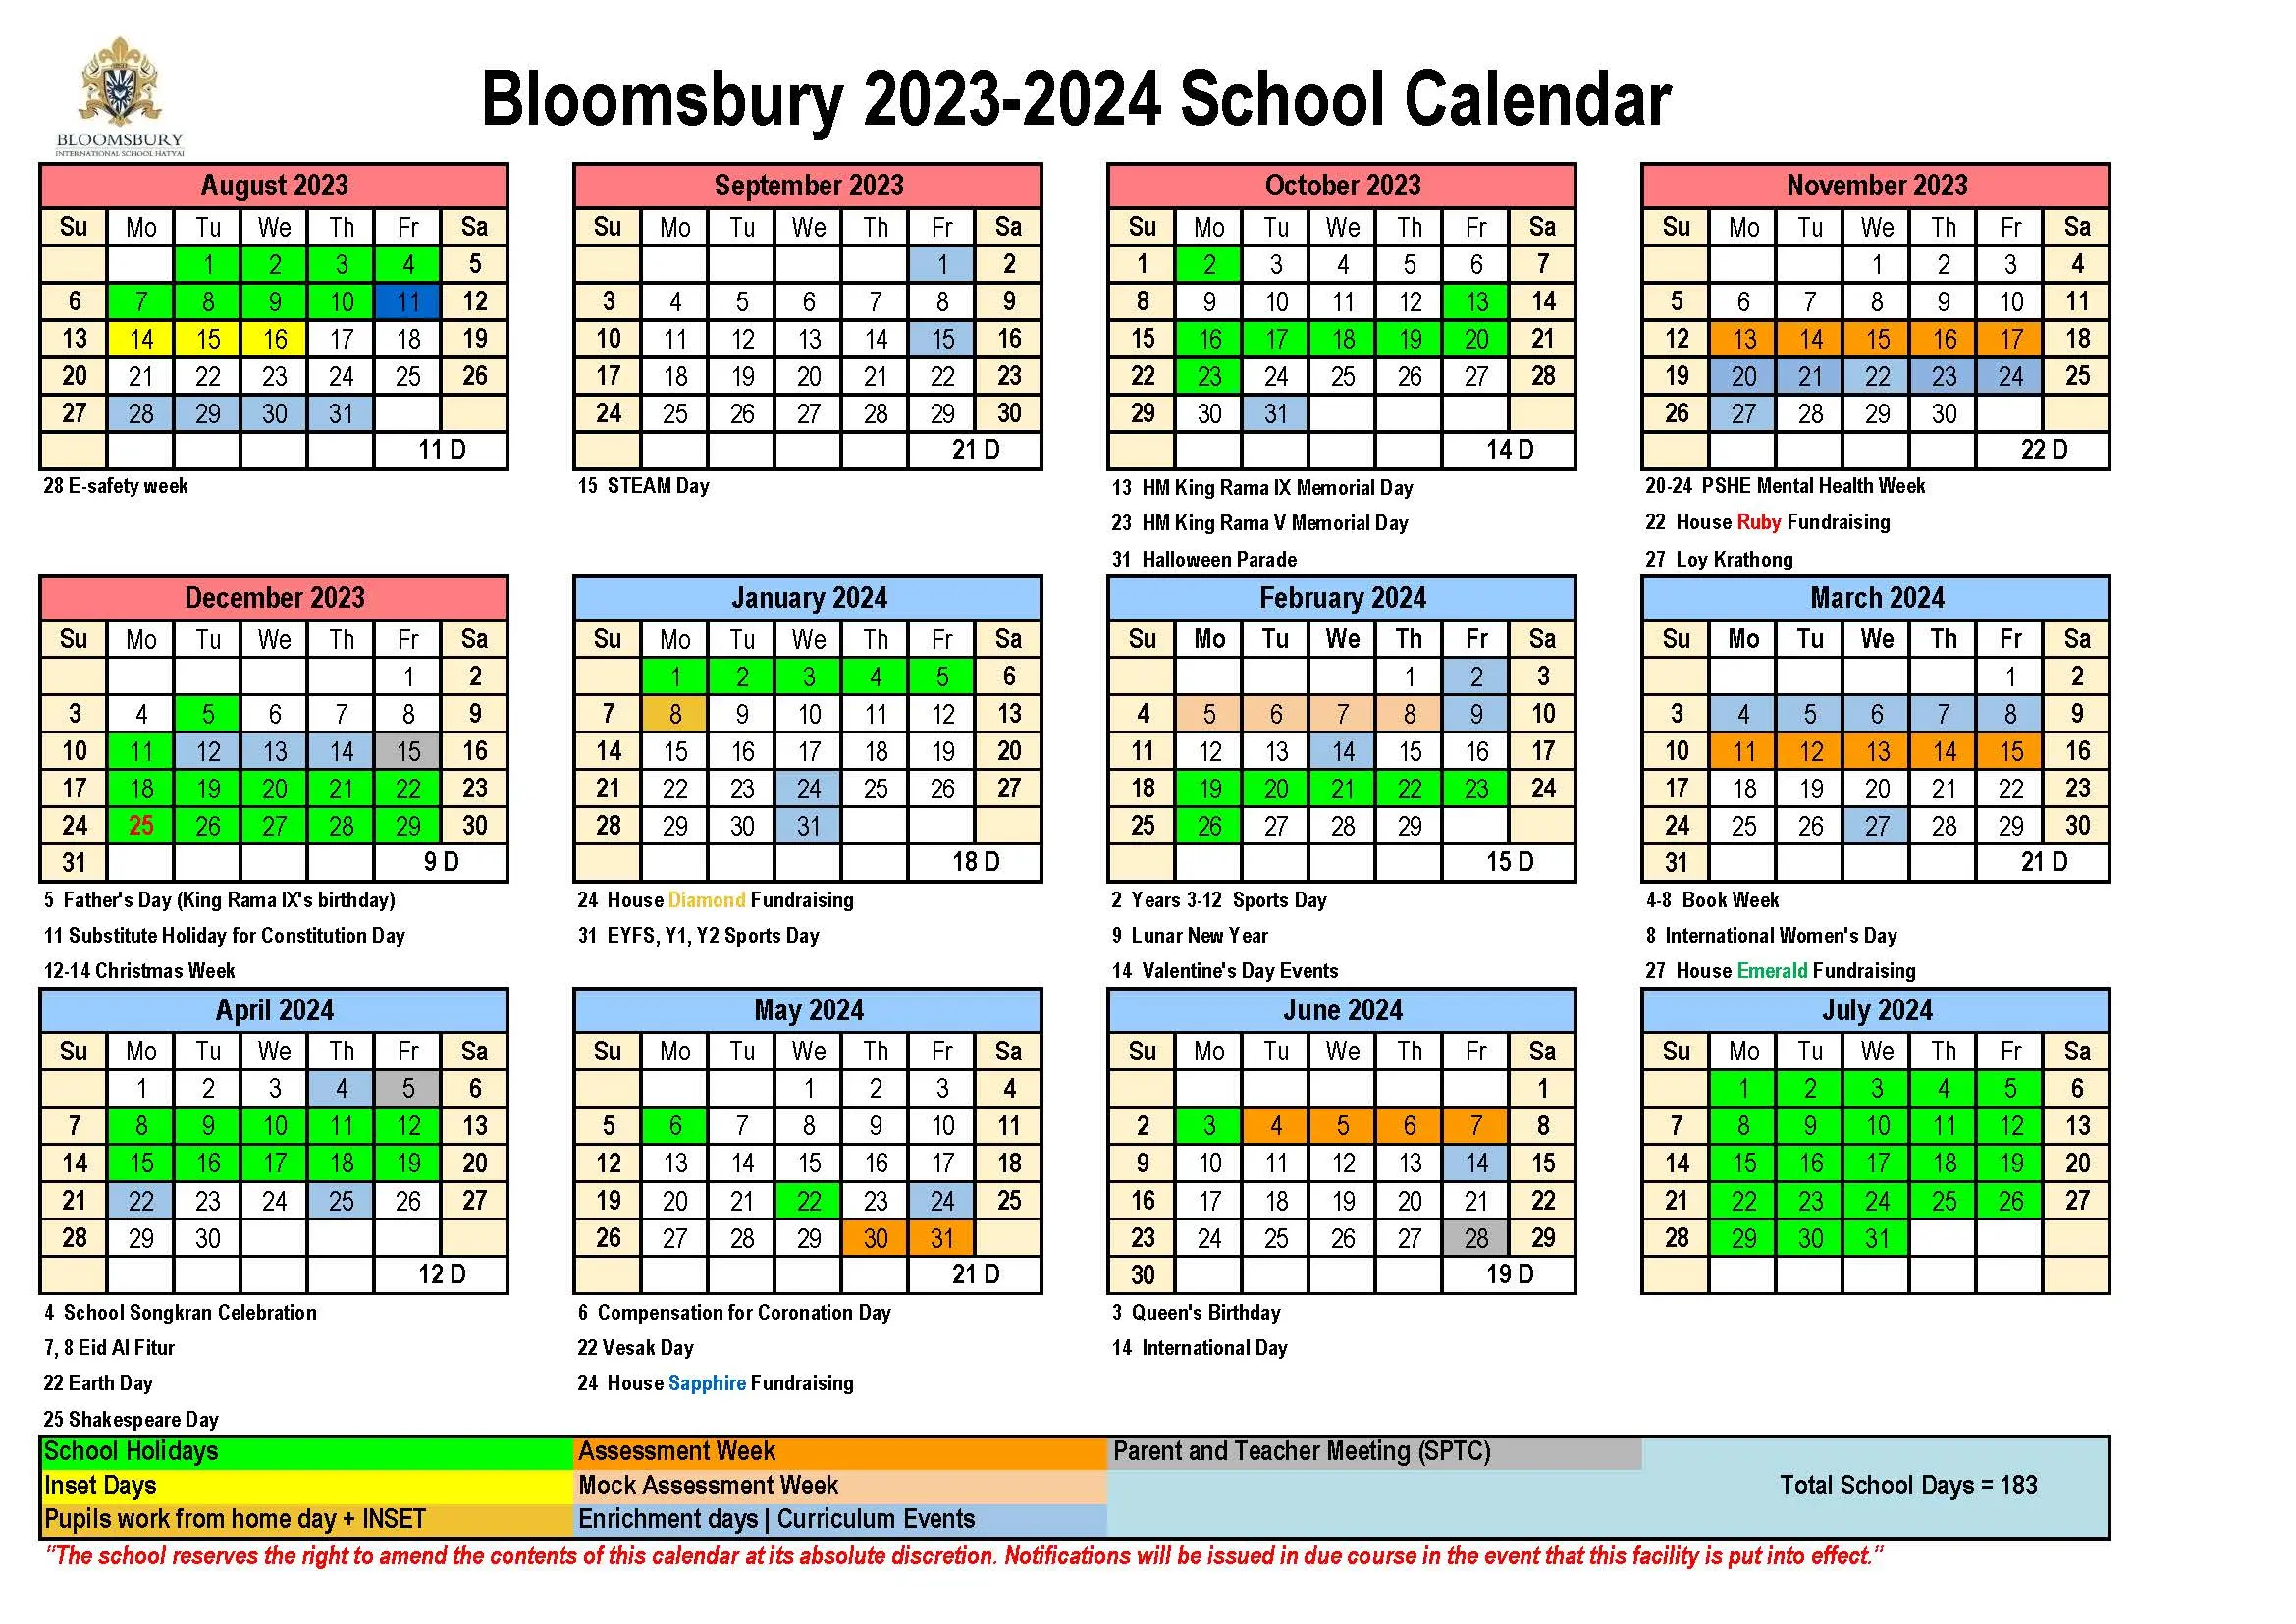 Bloomsbury School Calendar 2023-2024